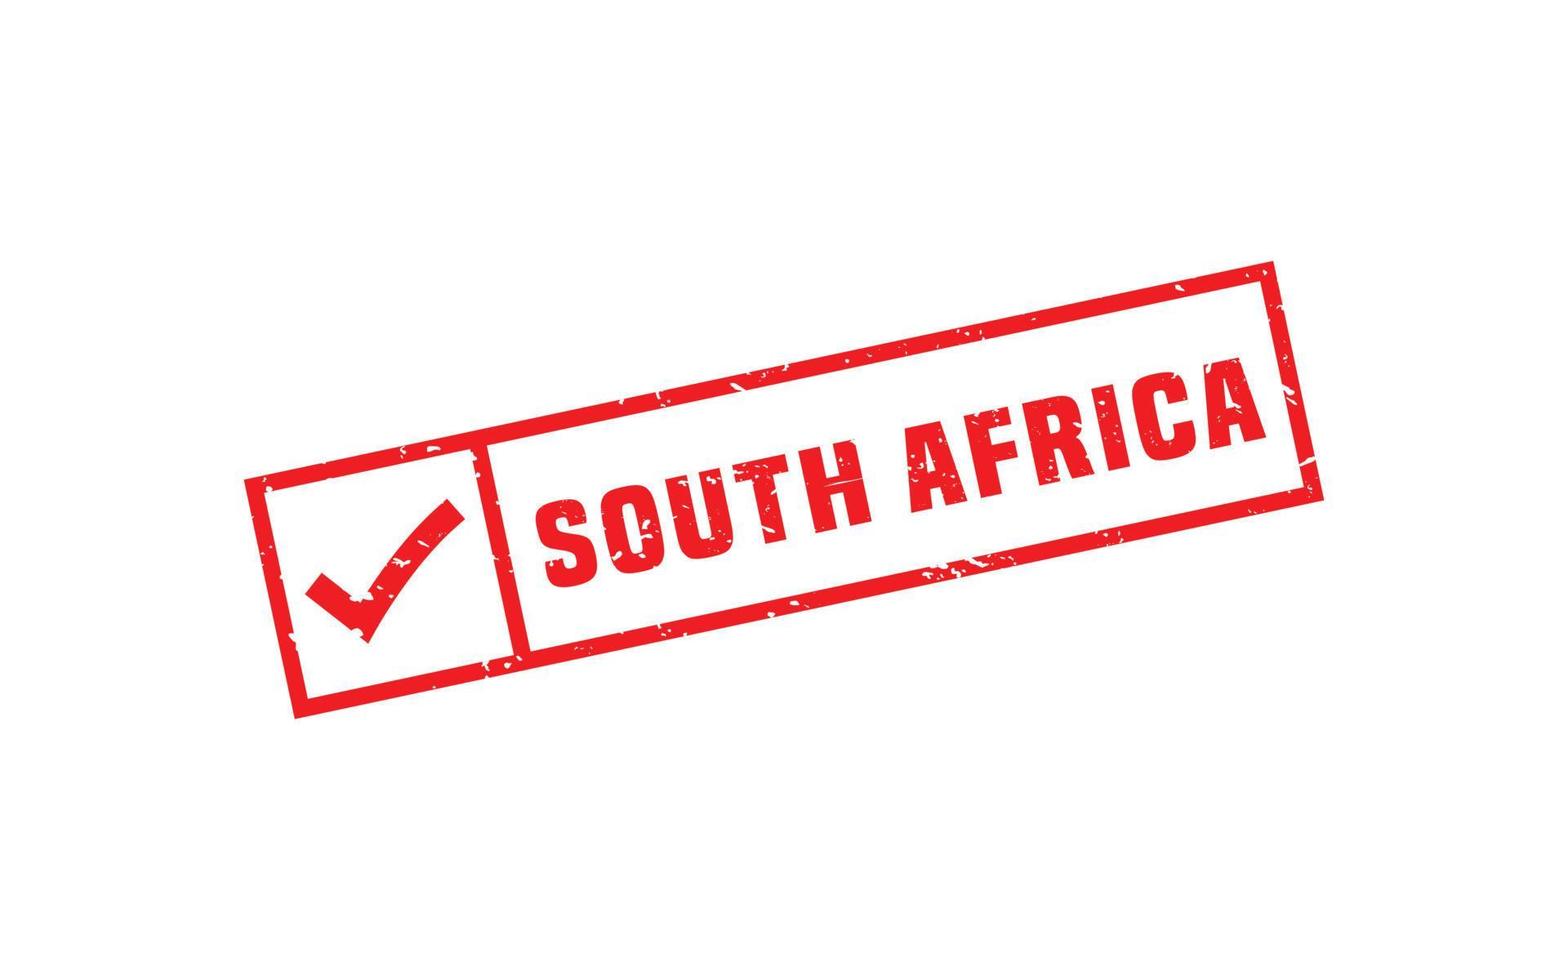 Südafrika Stempelgummi mit Grunge-Stil auf weißem Hintergrund vektor